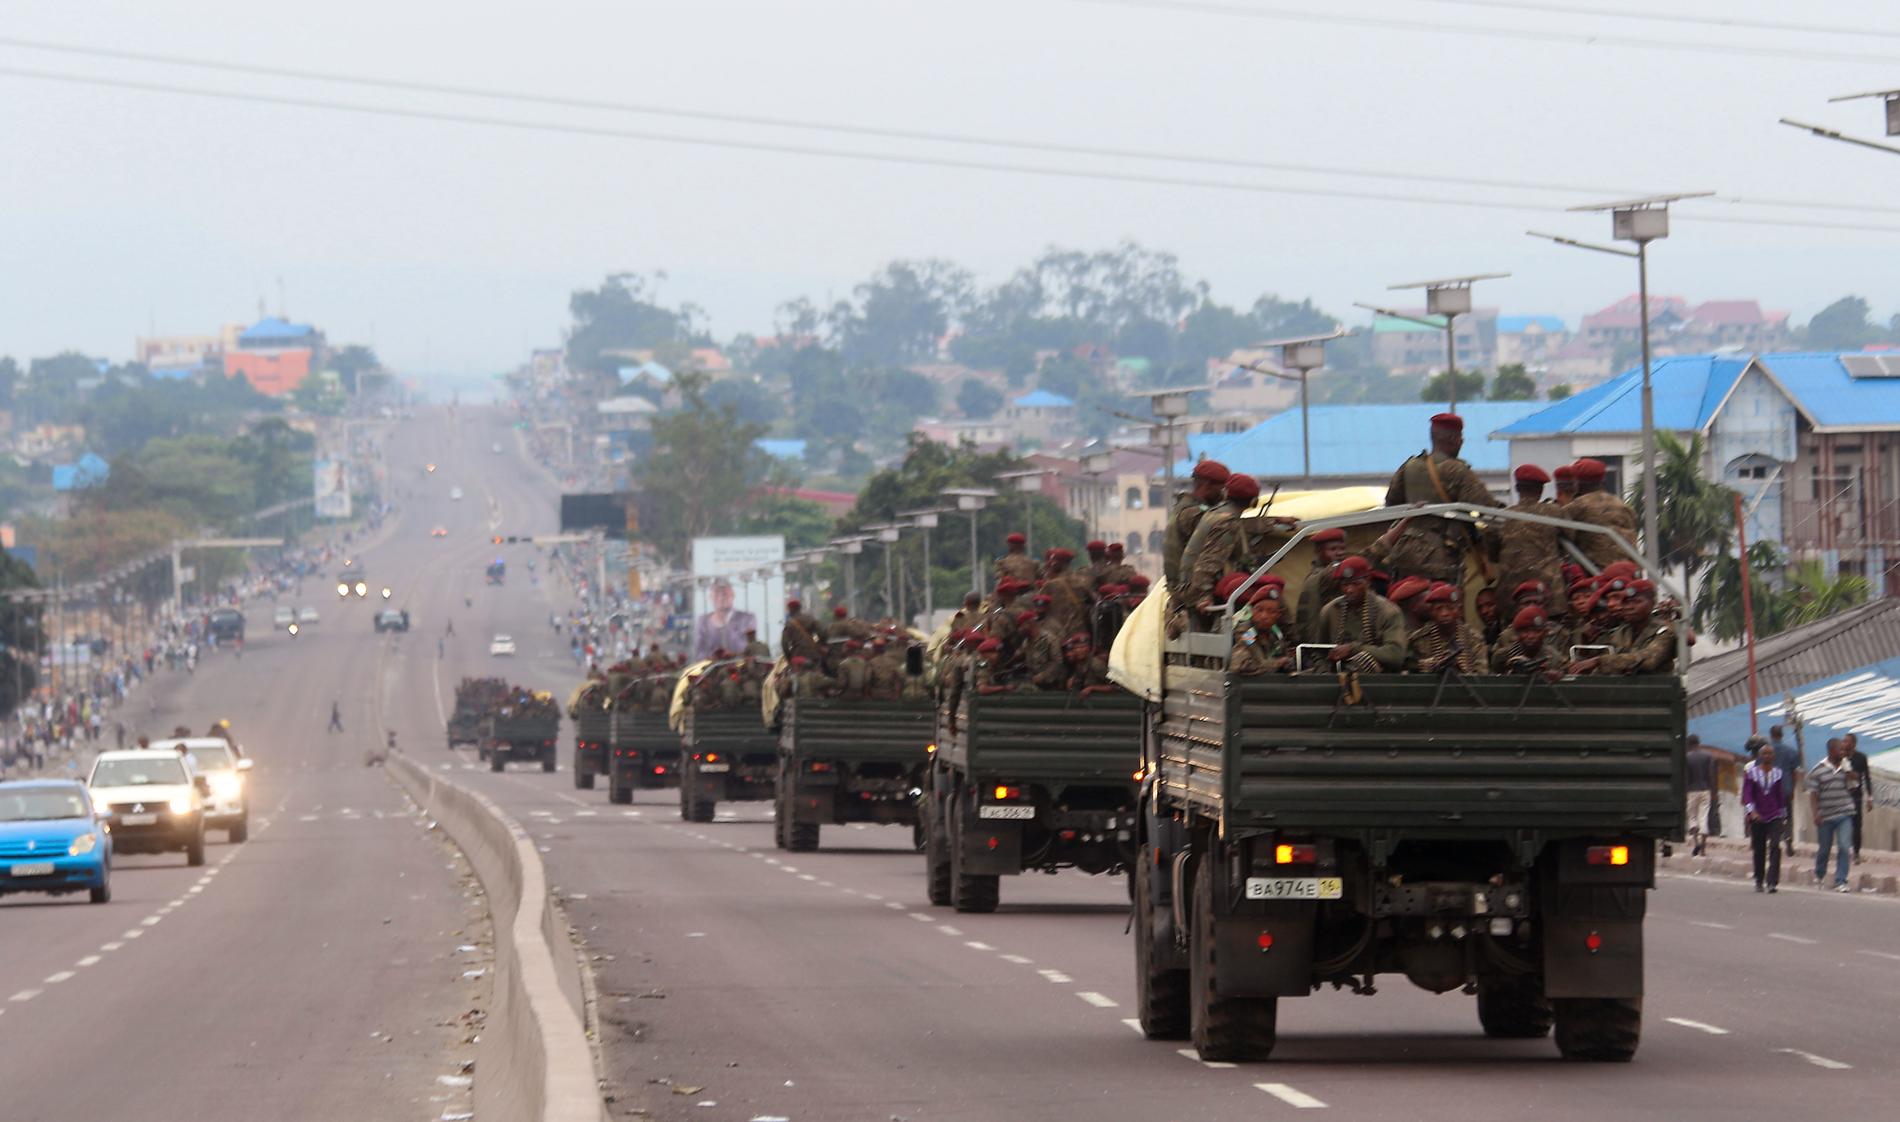 På bilden syns kongolesiska regeringsstyrkor. Bilden har ingen koppling till händelsen i artikeln.